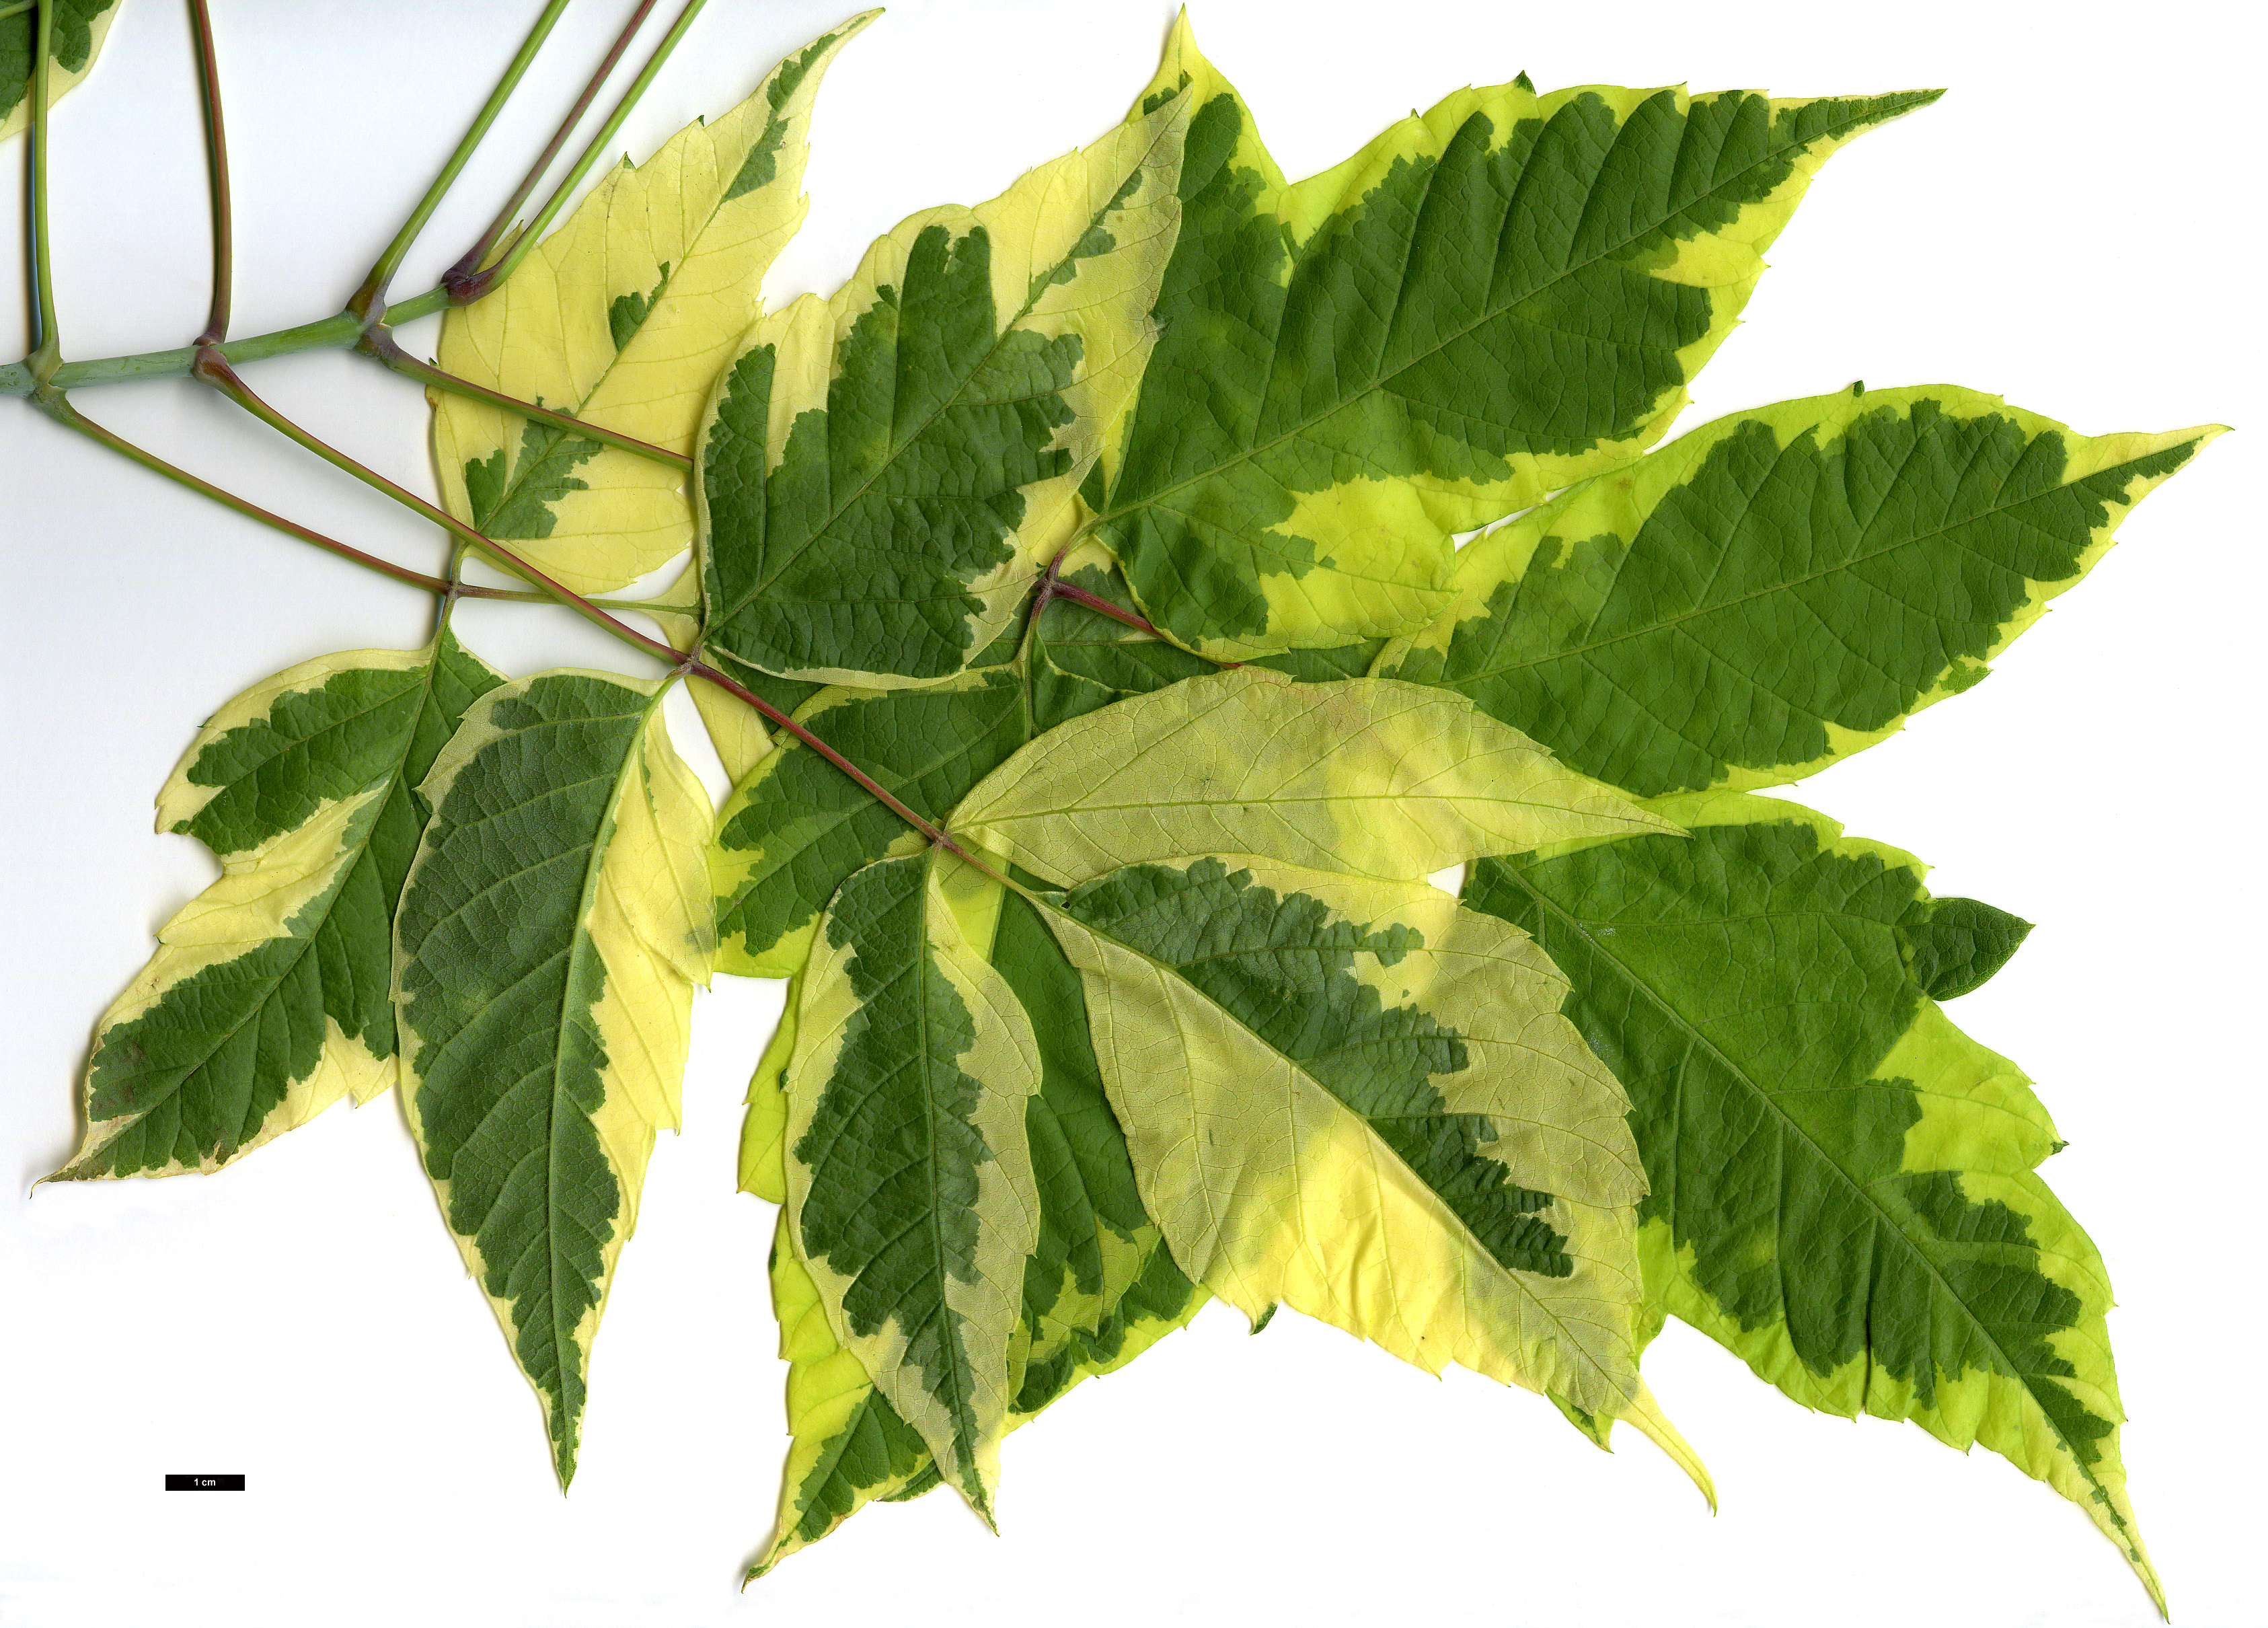 High resolution image: Family: Sapindaceae - Genus: Acer - Taxon: negundo - SpeciesSub: 'Aureomarginatum'